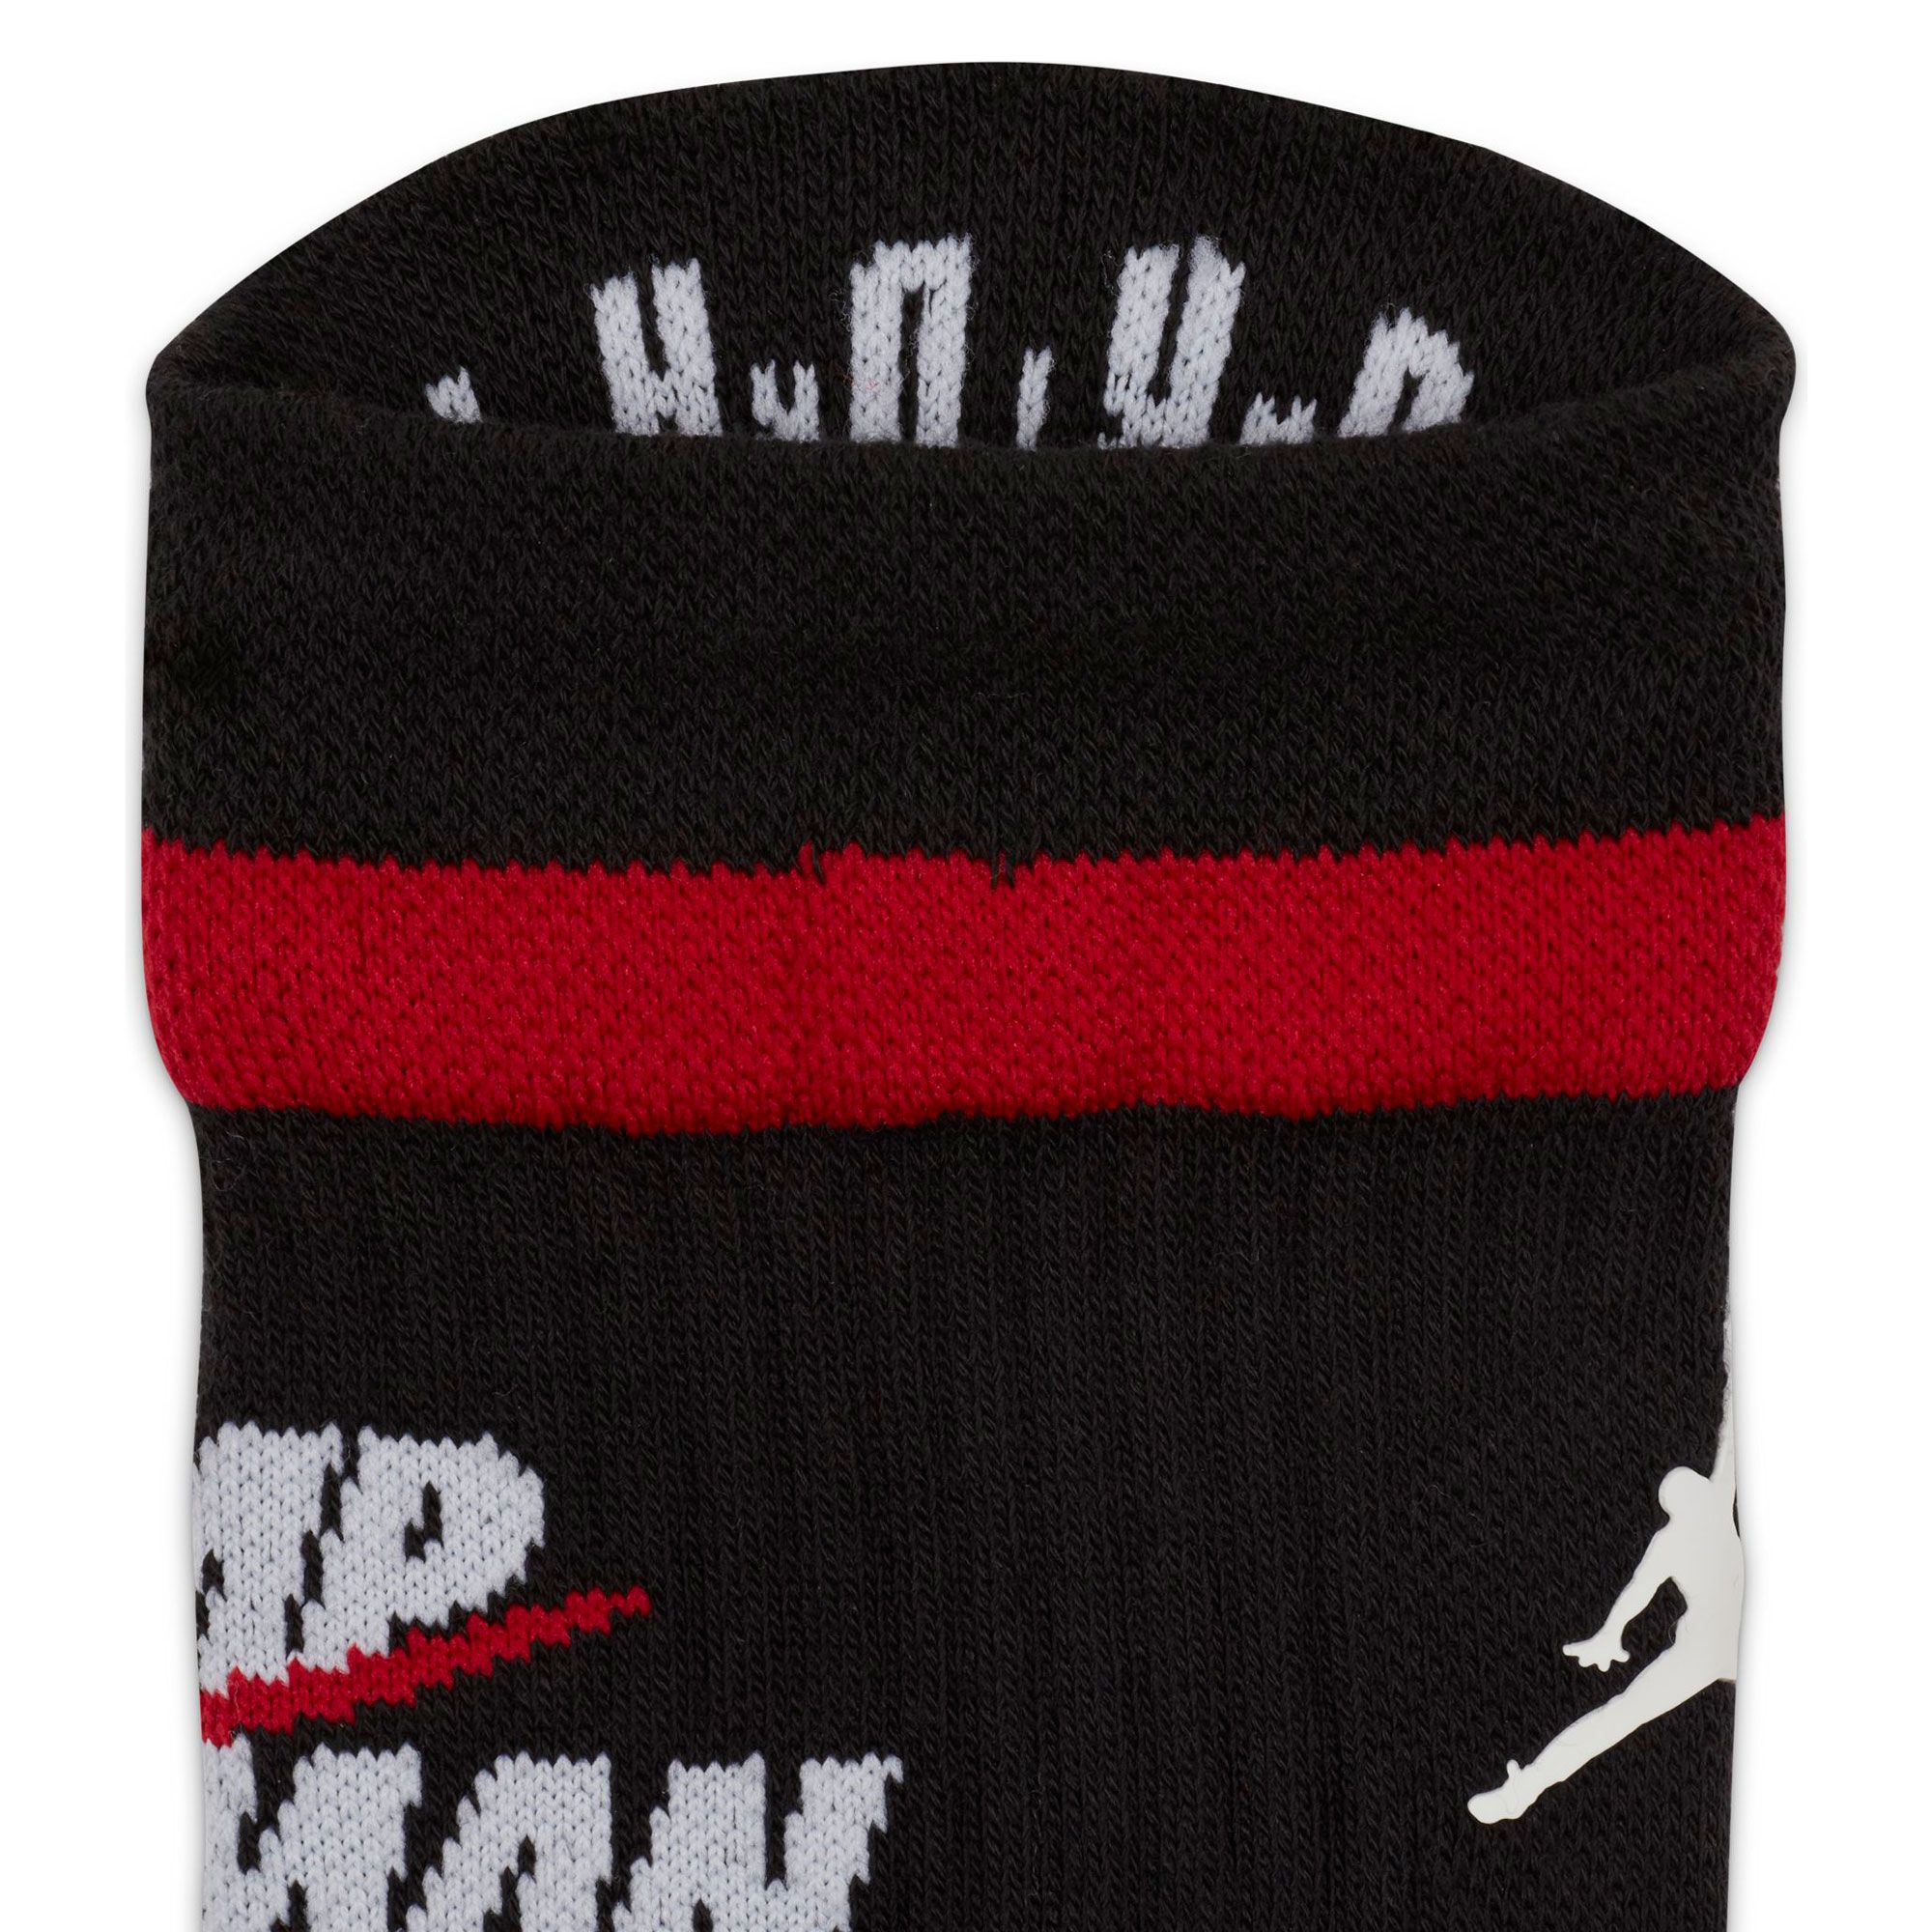 Nike+Jordan+Legacy+Jumpman+Crew+Socks+Black+Red+Cu6609+010+Men%27s